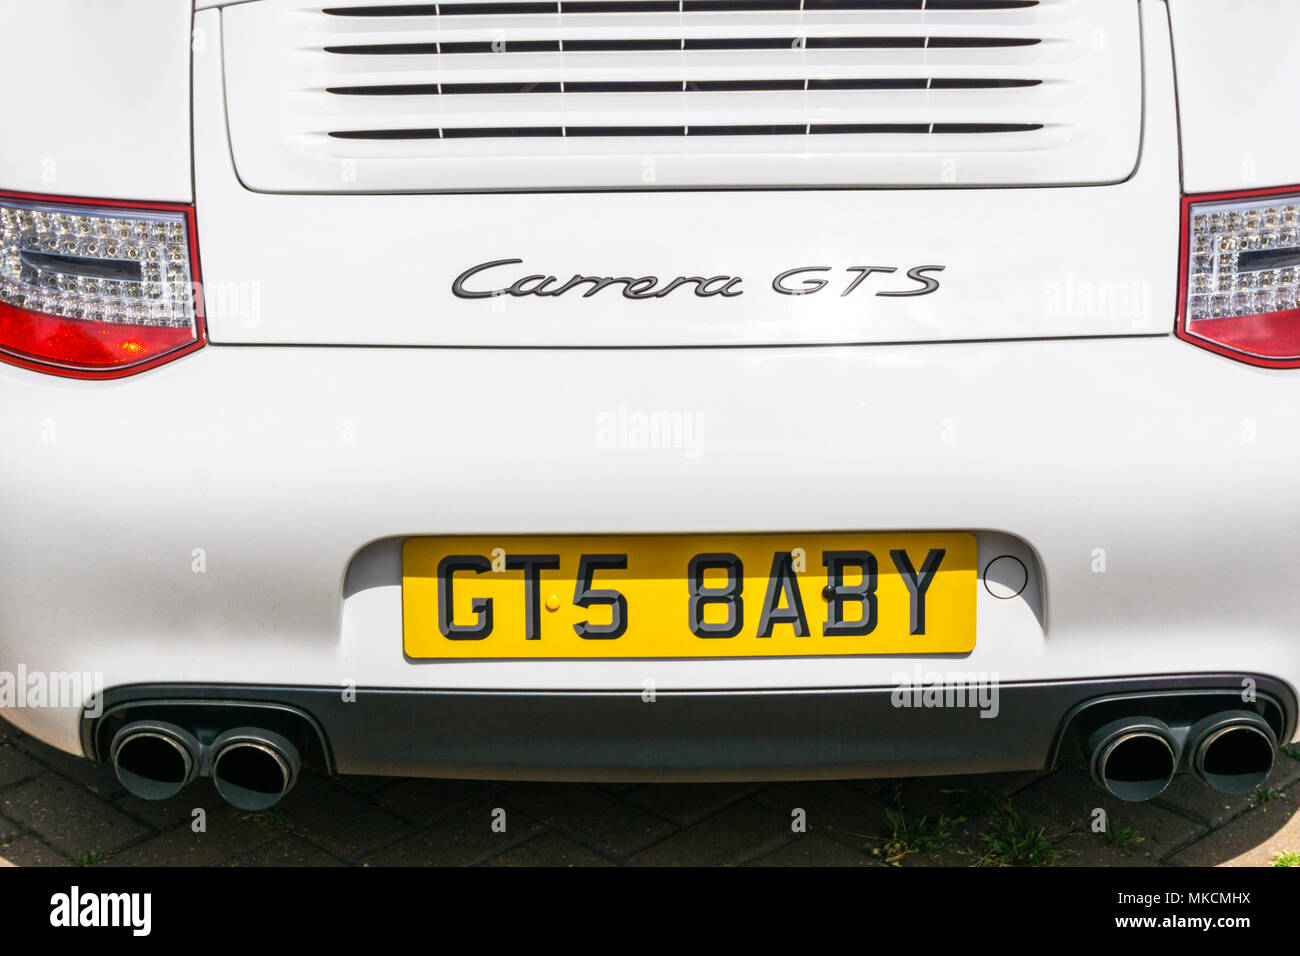 Una Porsche Carrera GTS con la possibilità di personalizzare il numero di targa che effettivamente legge GTS BABY. Foto Stock